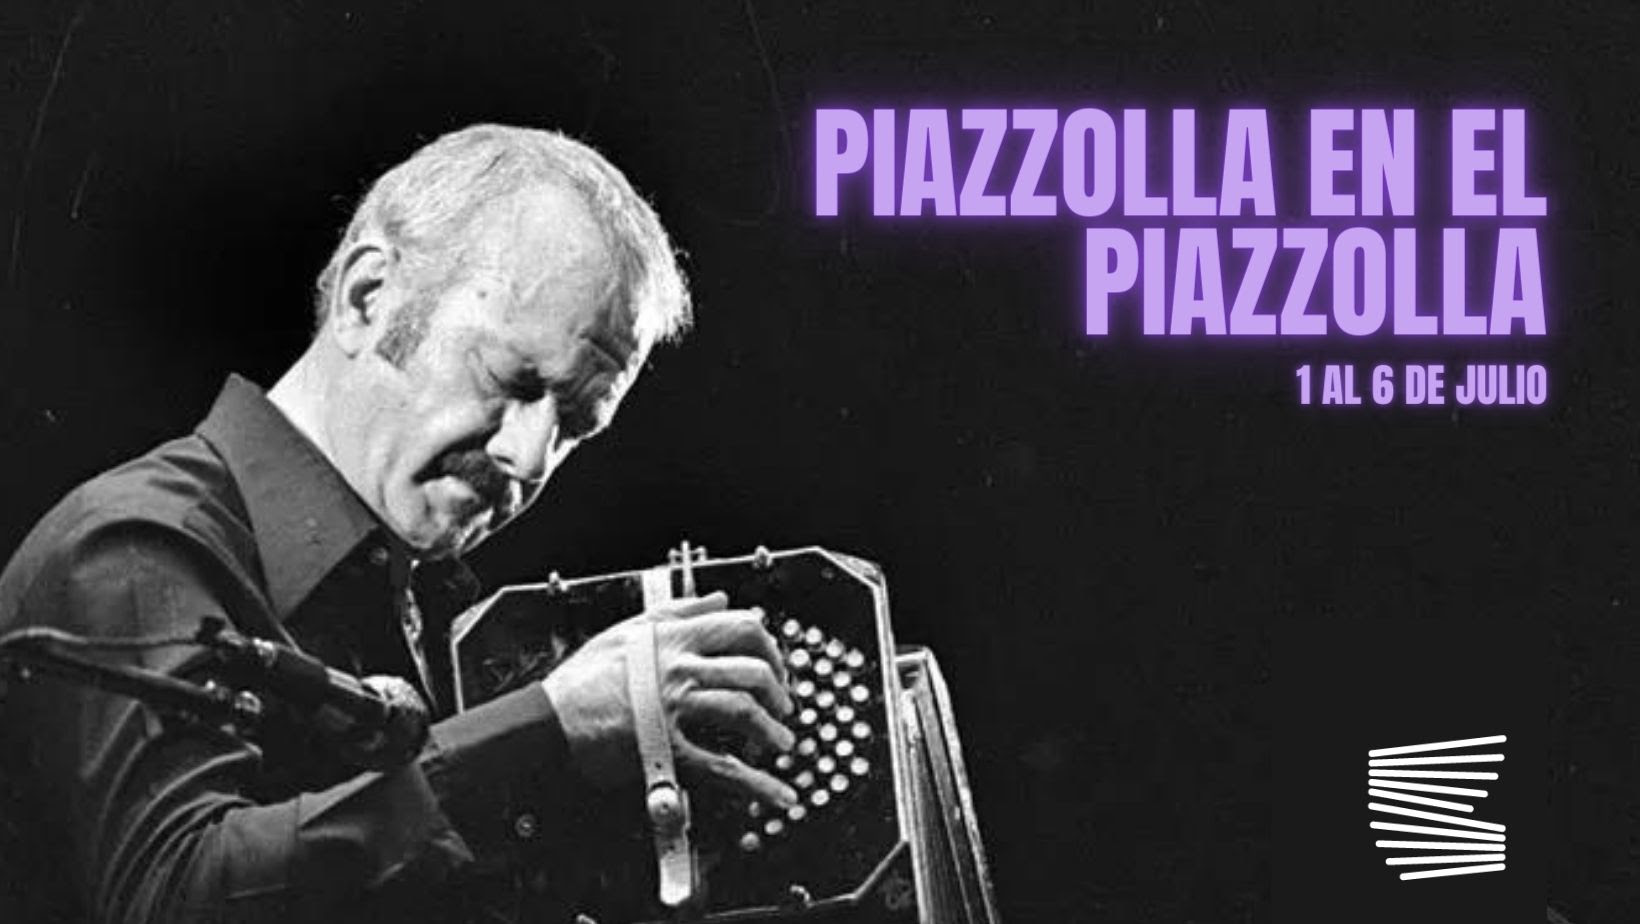 Piazzolla en el Piazzolla